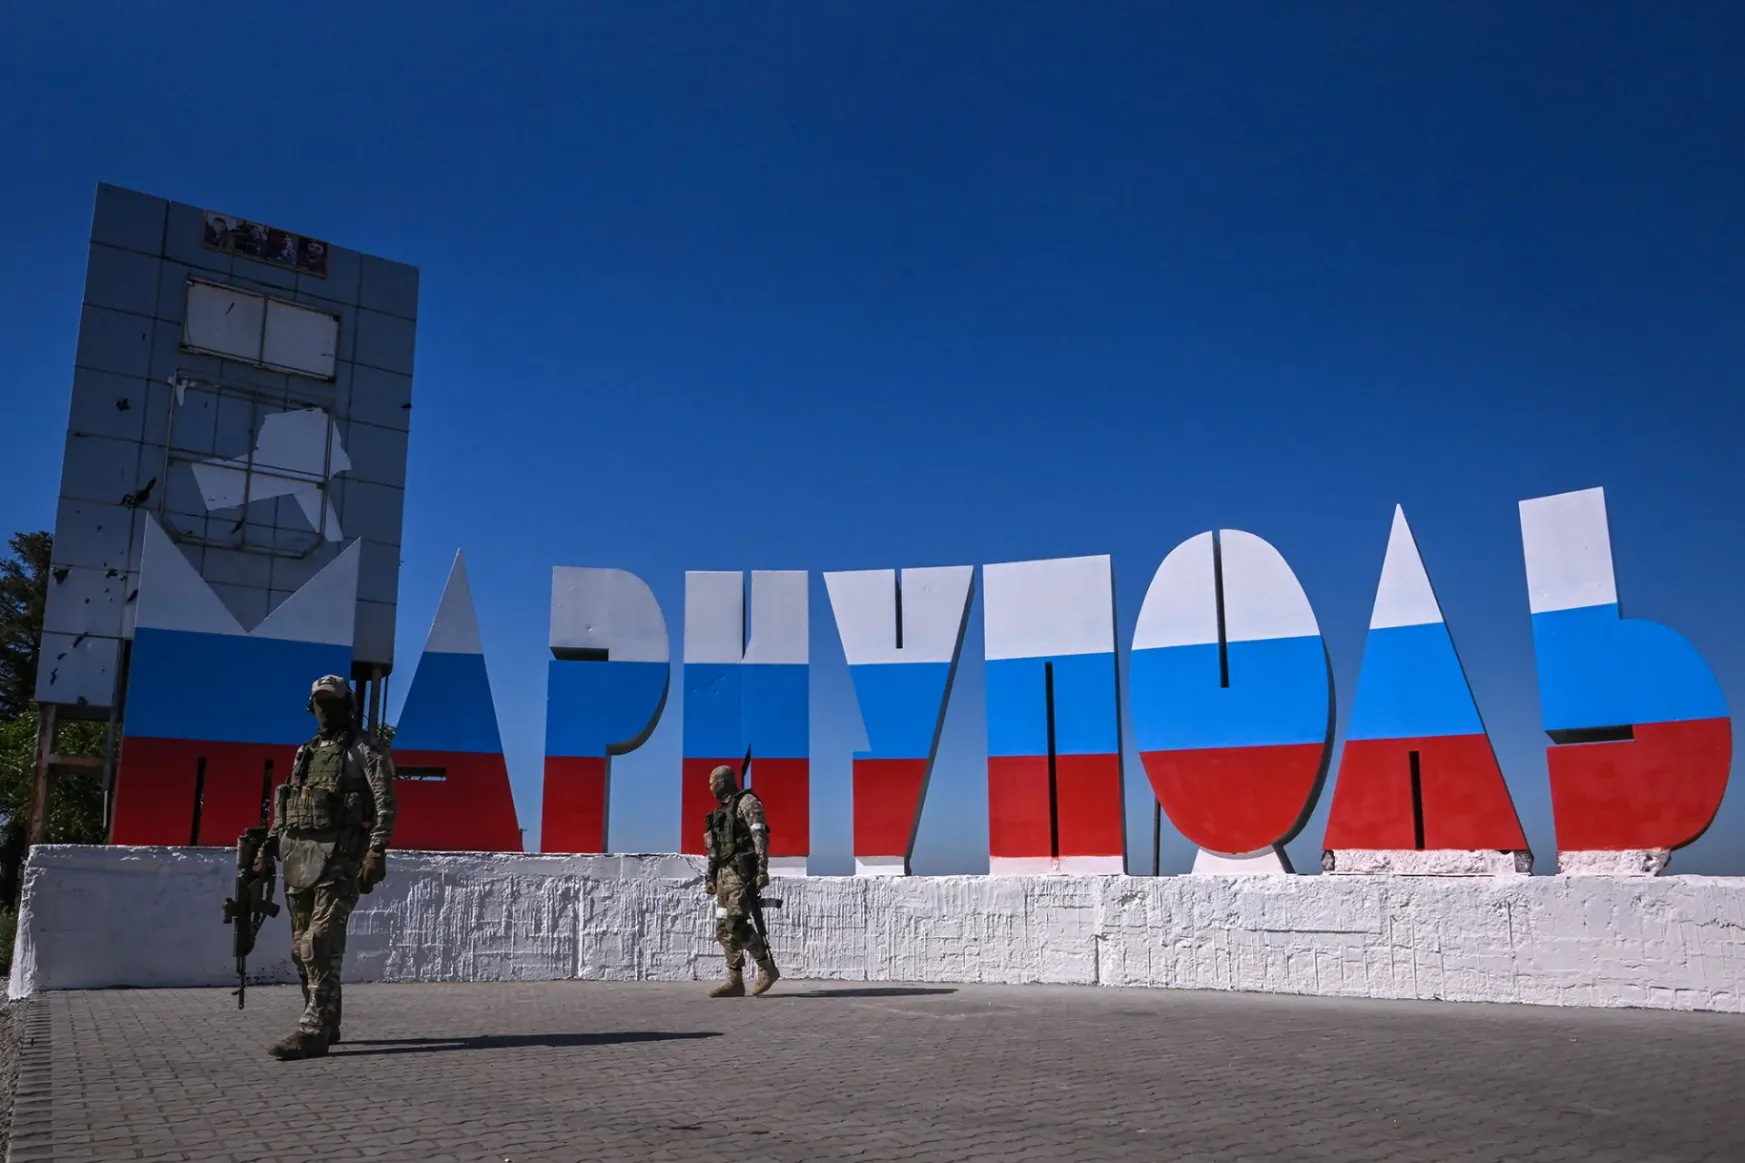 Mariupolra már alig figyel a világ, pedig jól mutatja, milyen az élet egy orosz „felszabadítás” után